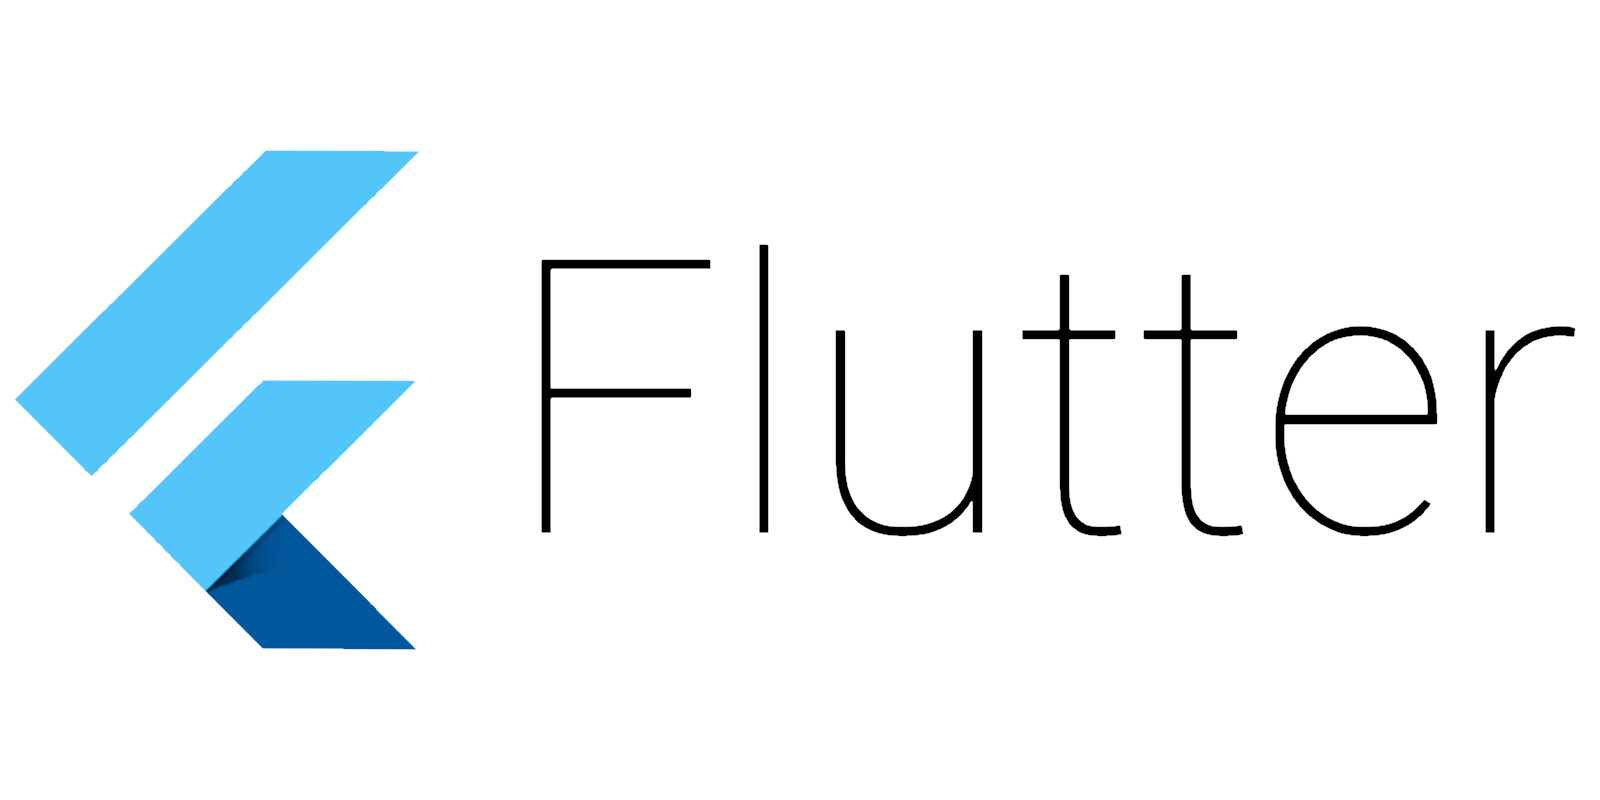 google-flutter-logo-white.png